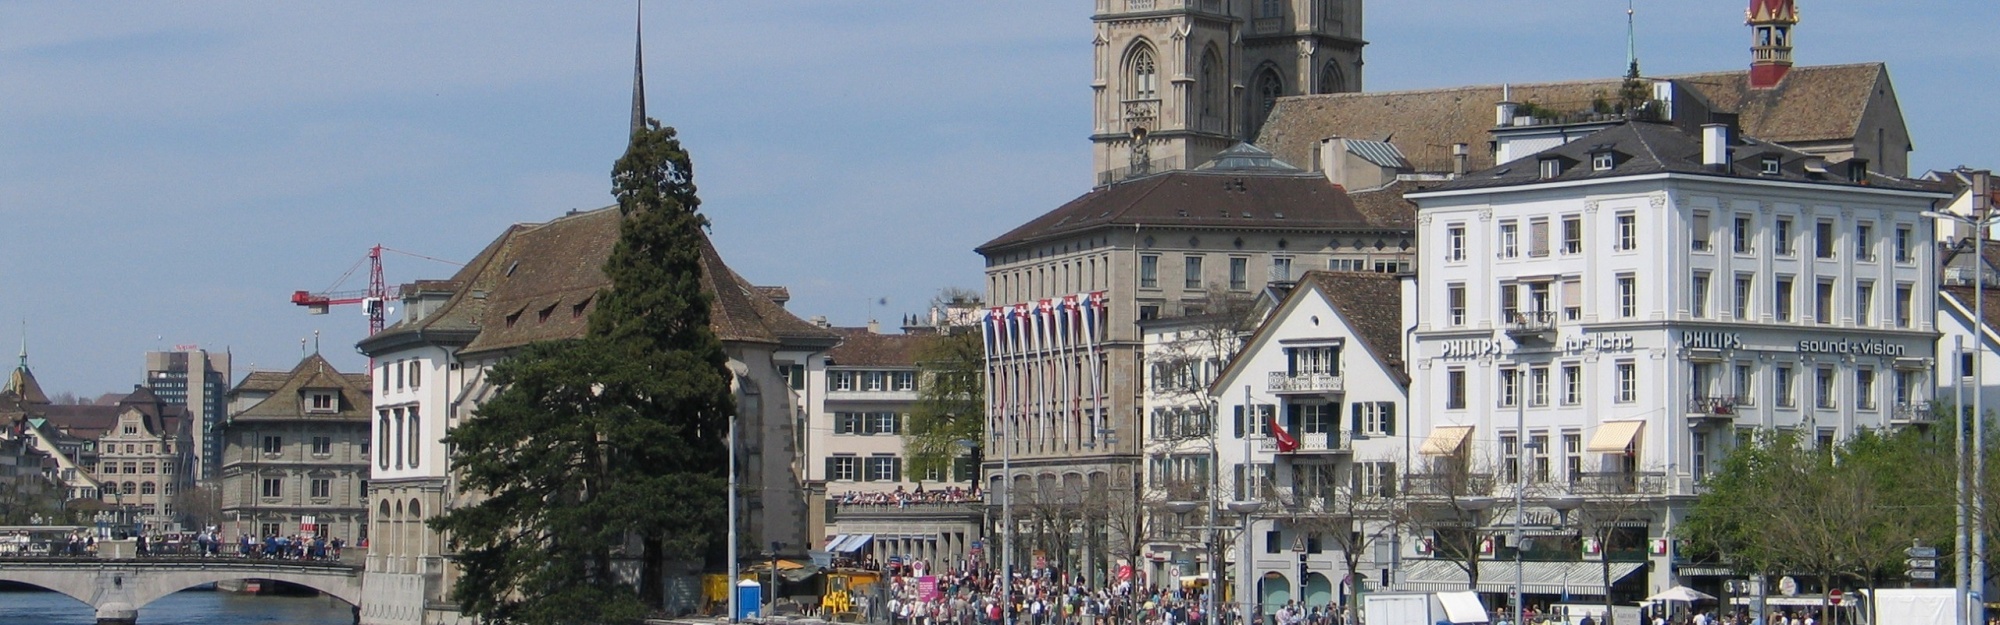 Rathaus Zurich Switzerland